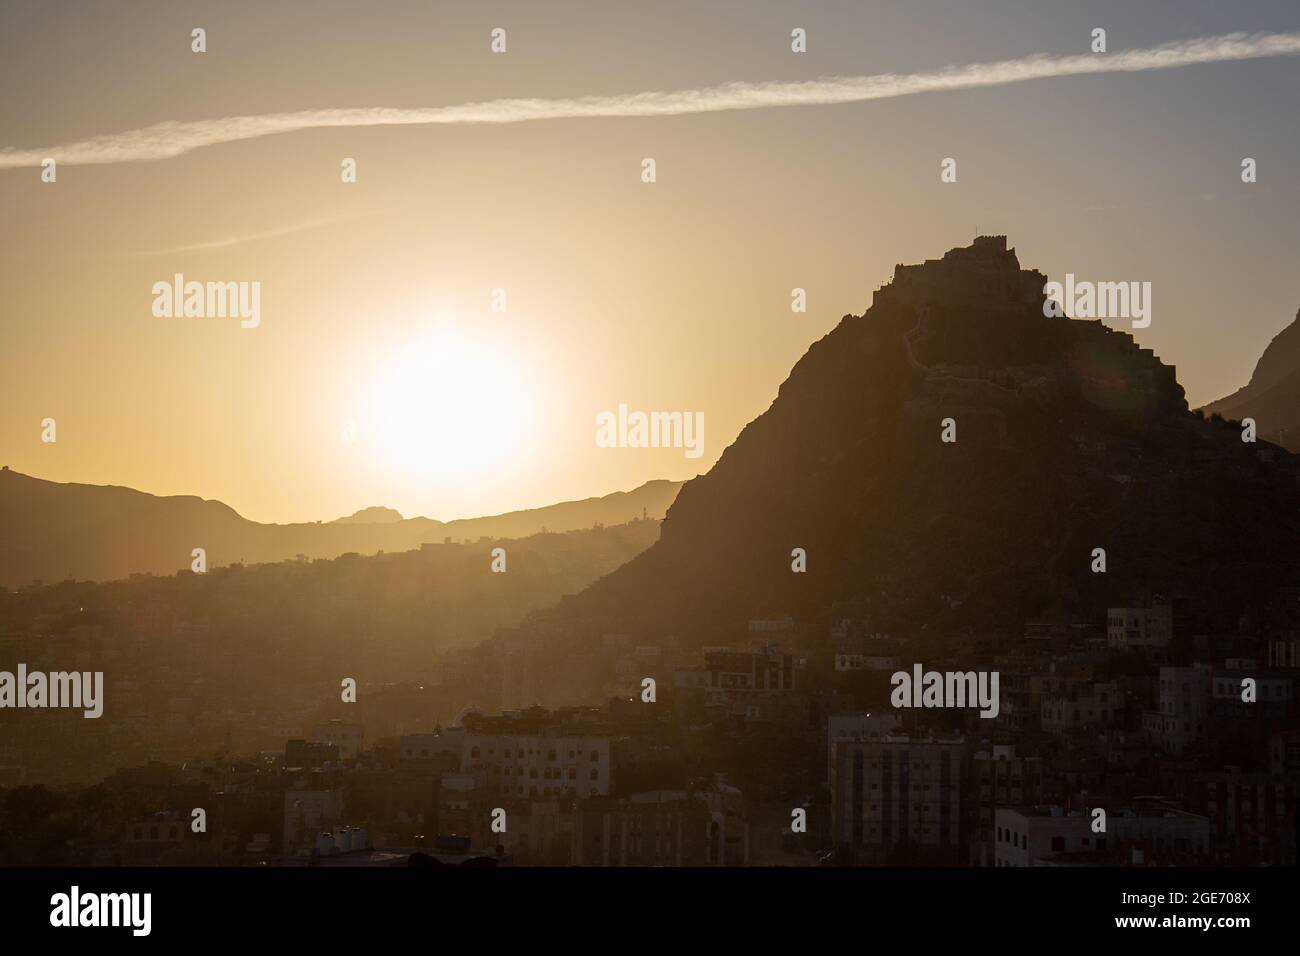 sonnenaufgang des historischen Schlosses 'Cairo' in Taiz Stadt, Jemen Landschaft. Stockfoto